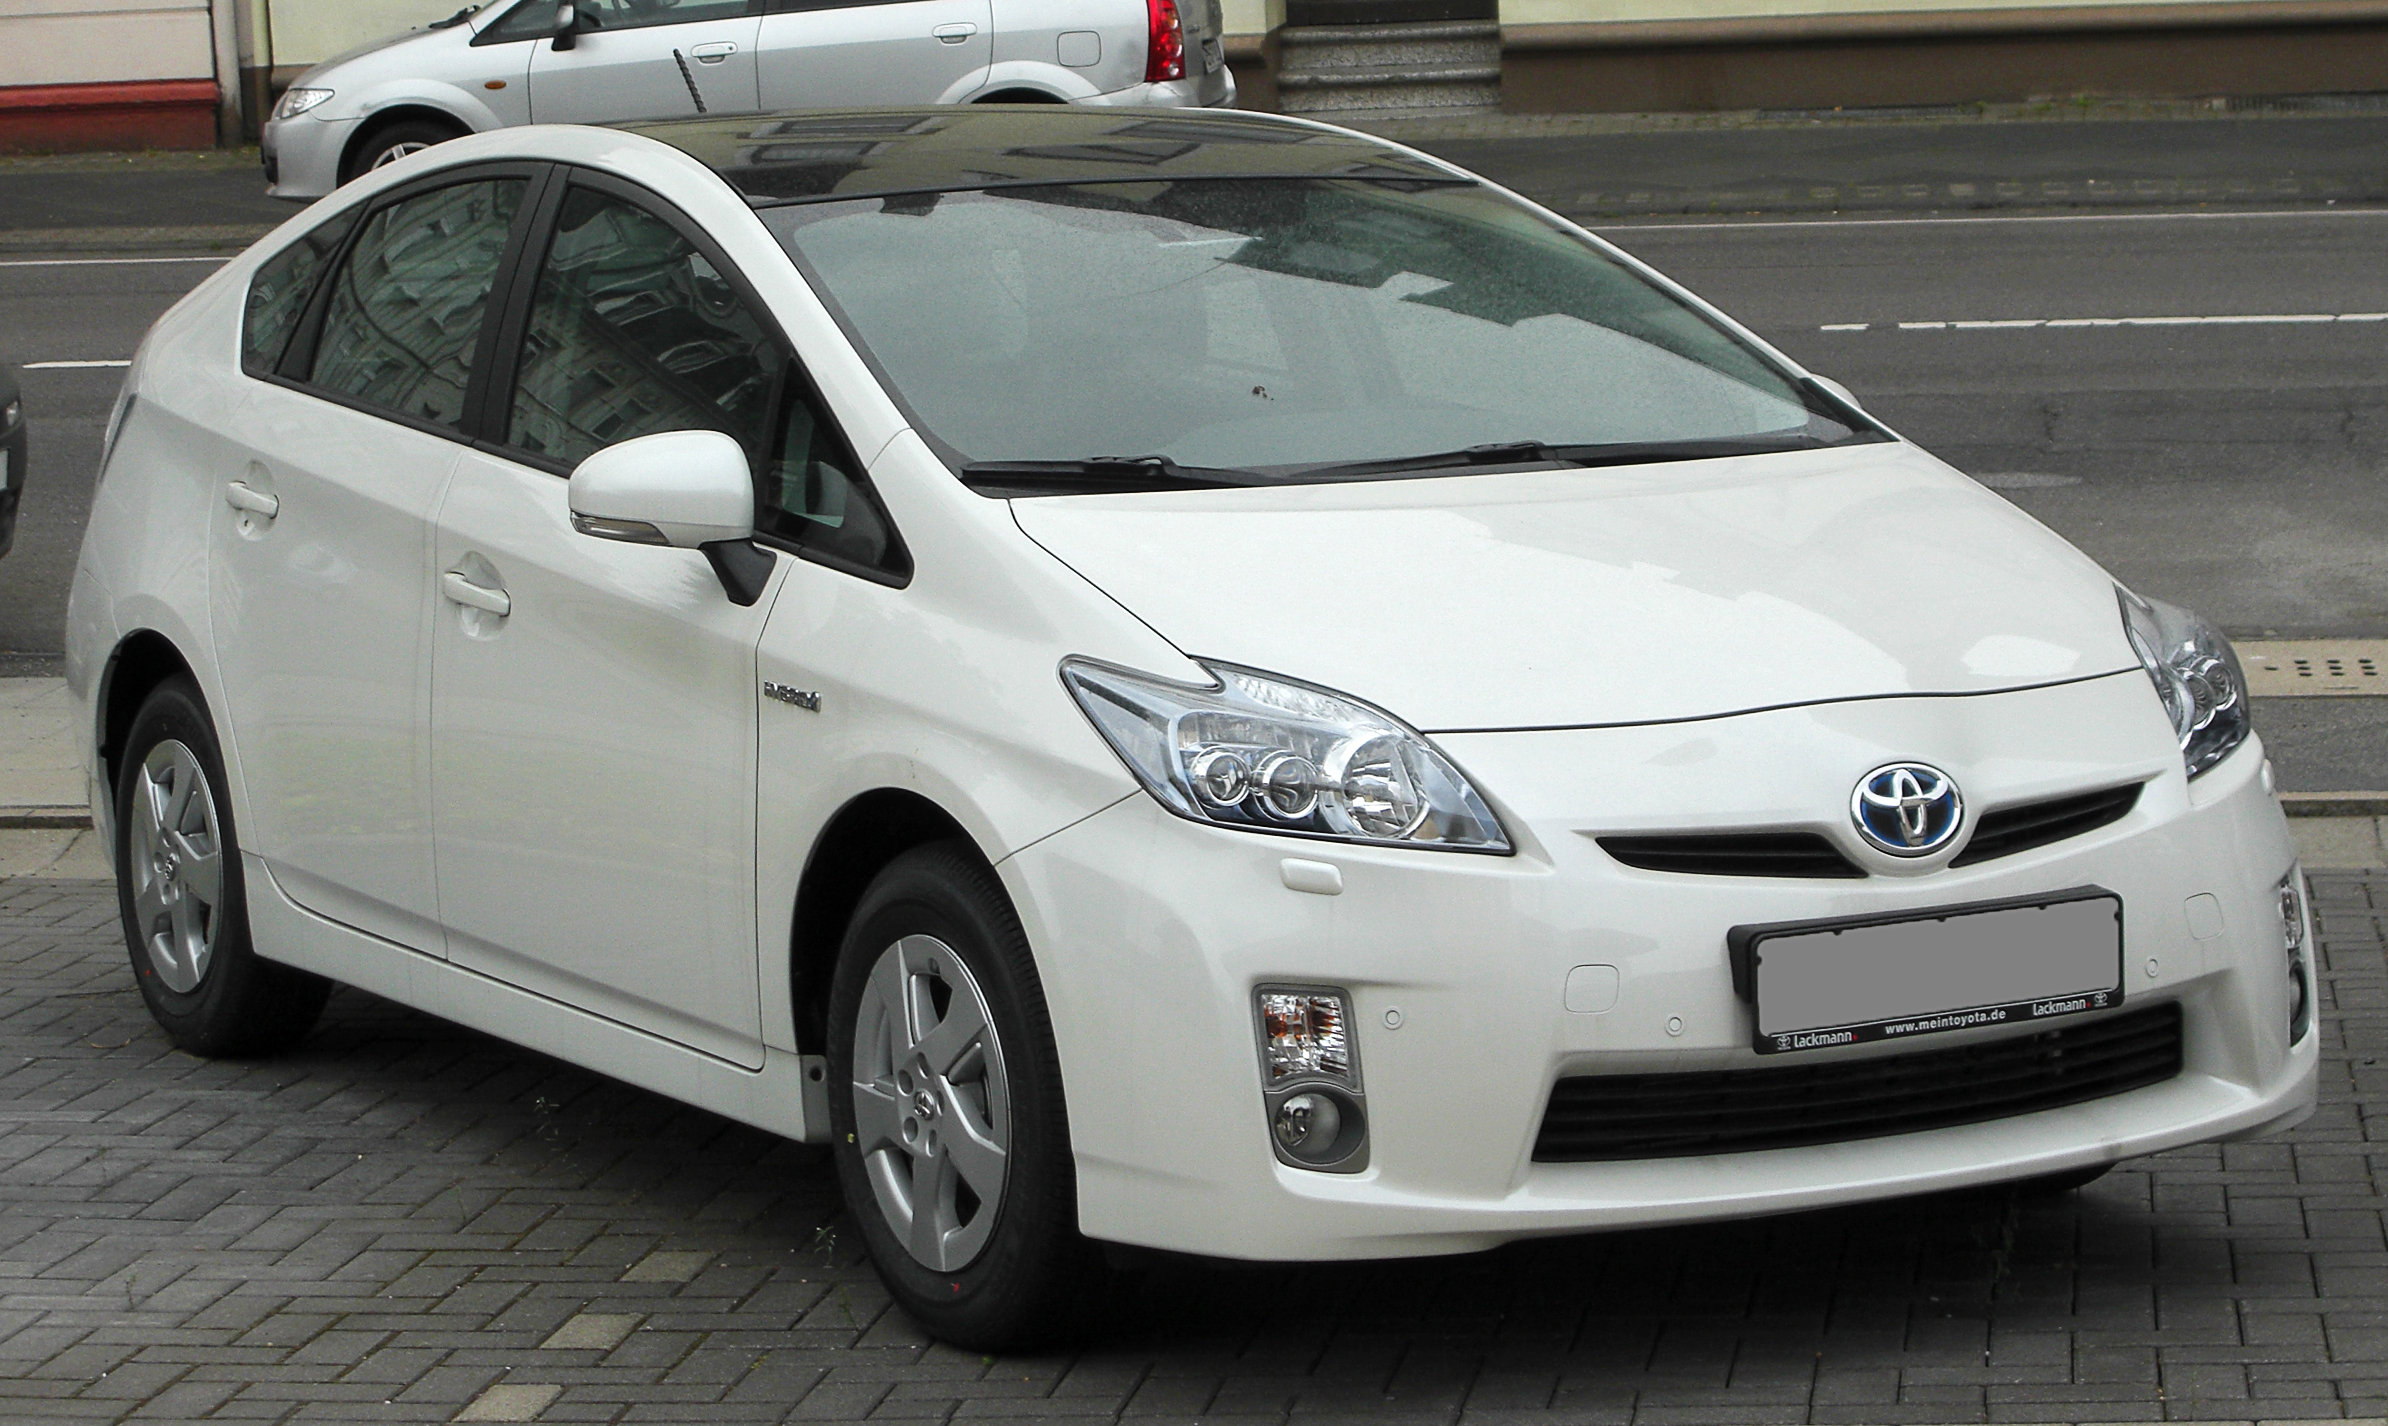 Toyota reporta resultados de venta positivos durante abril